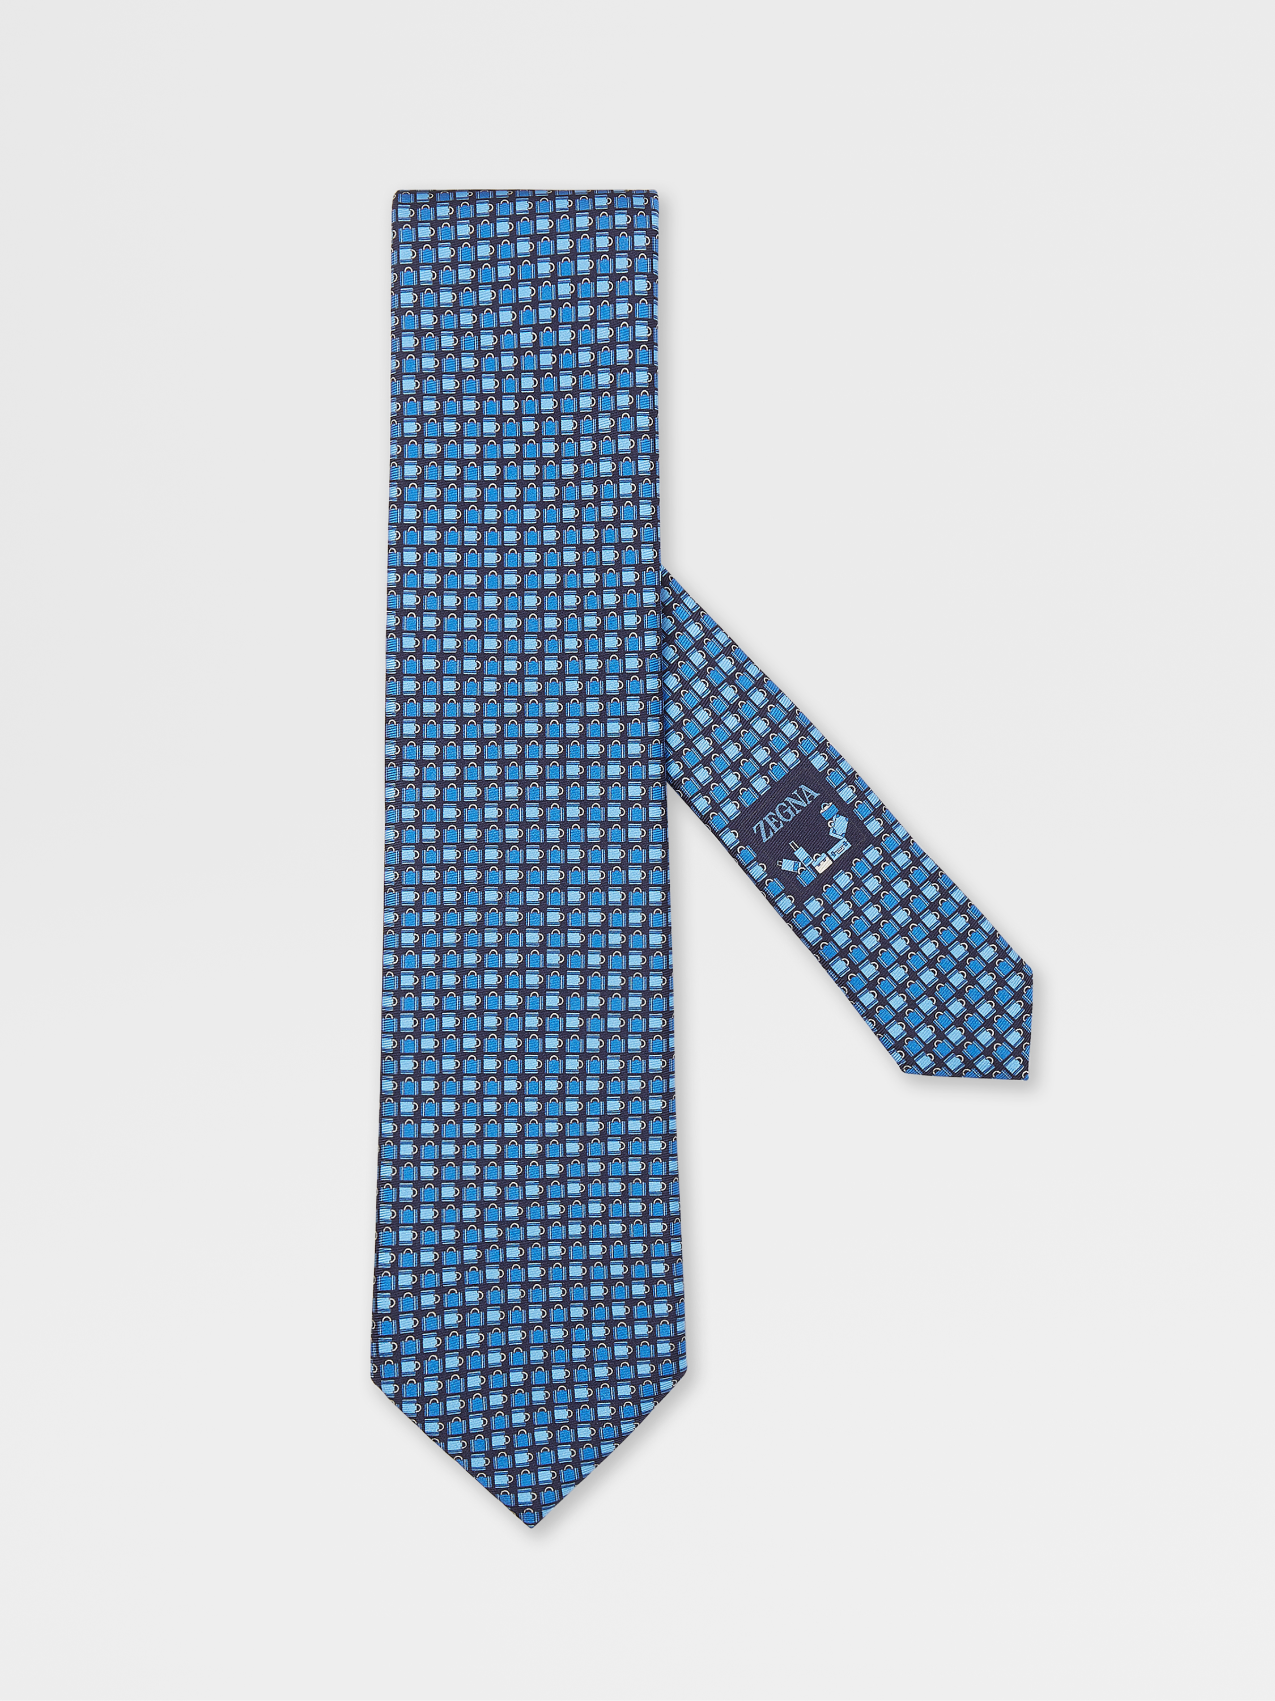 午夜蓝彩绘桑蚕丝领带